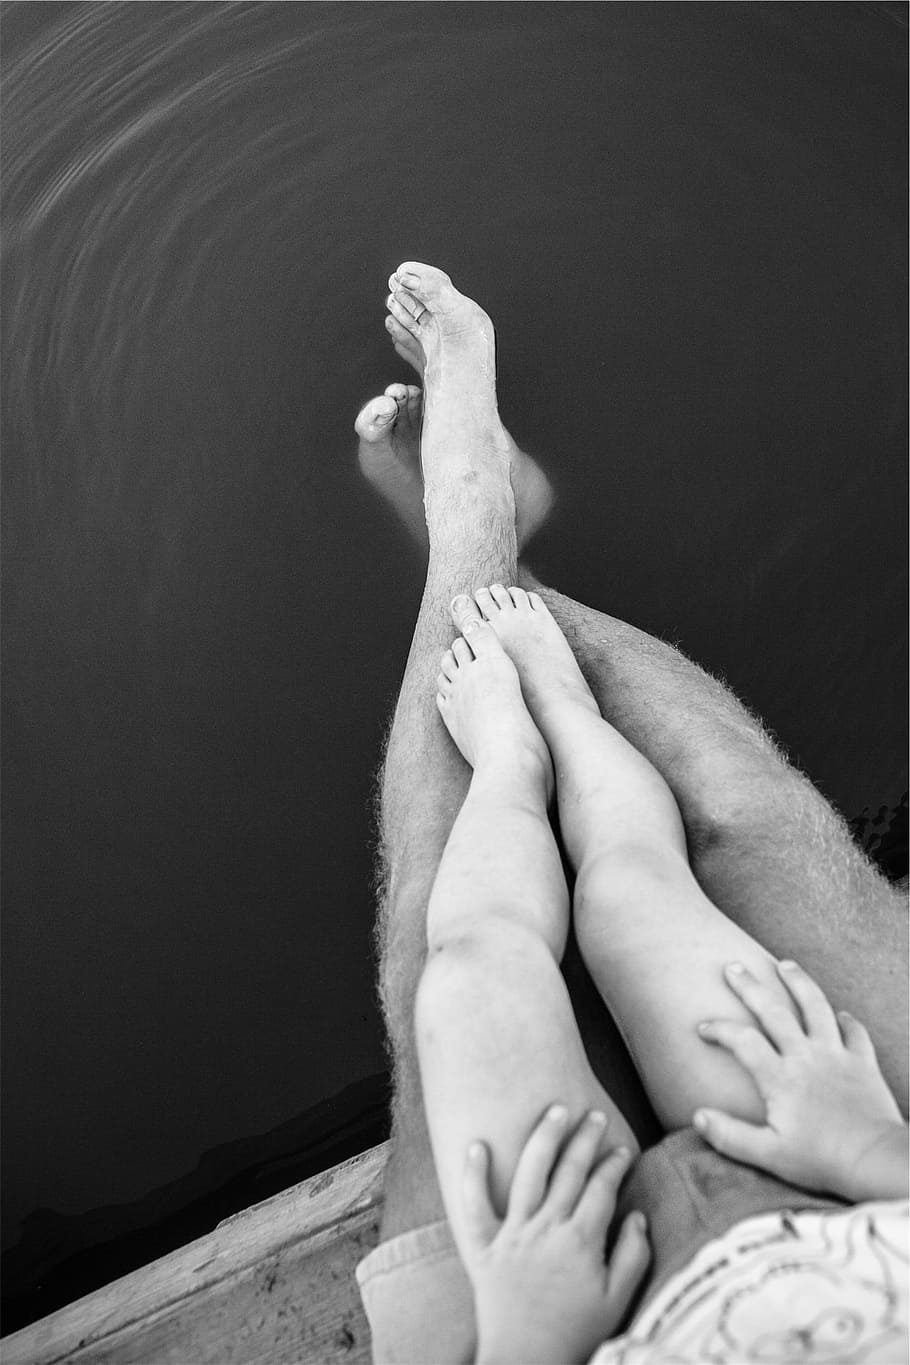 pernas, pés, mãos, bermudas, pai, criança, água, preto e branco, parte do corpo humano, pessoas reais